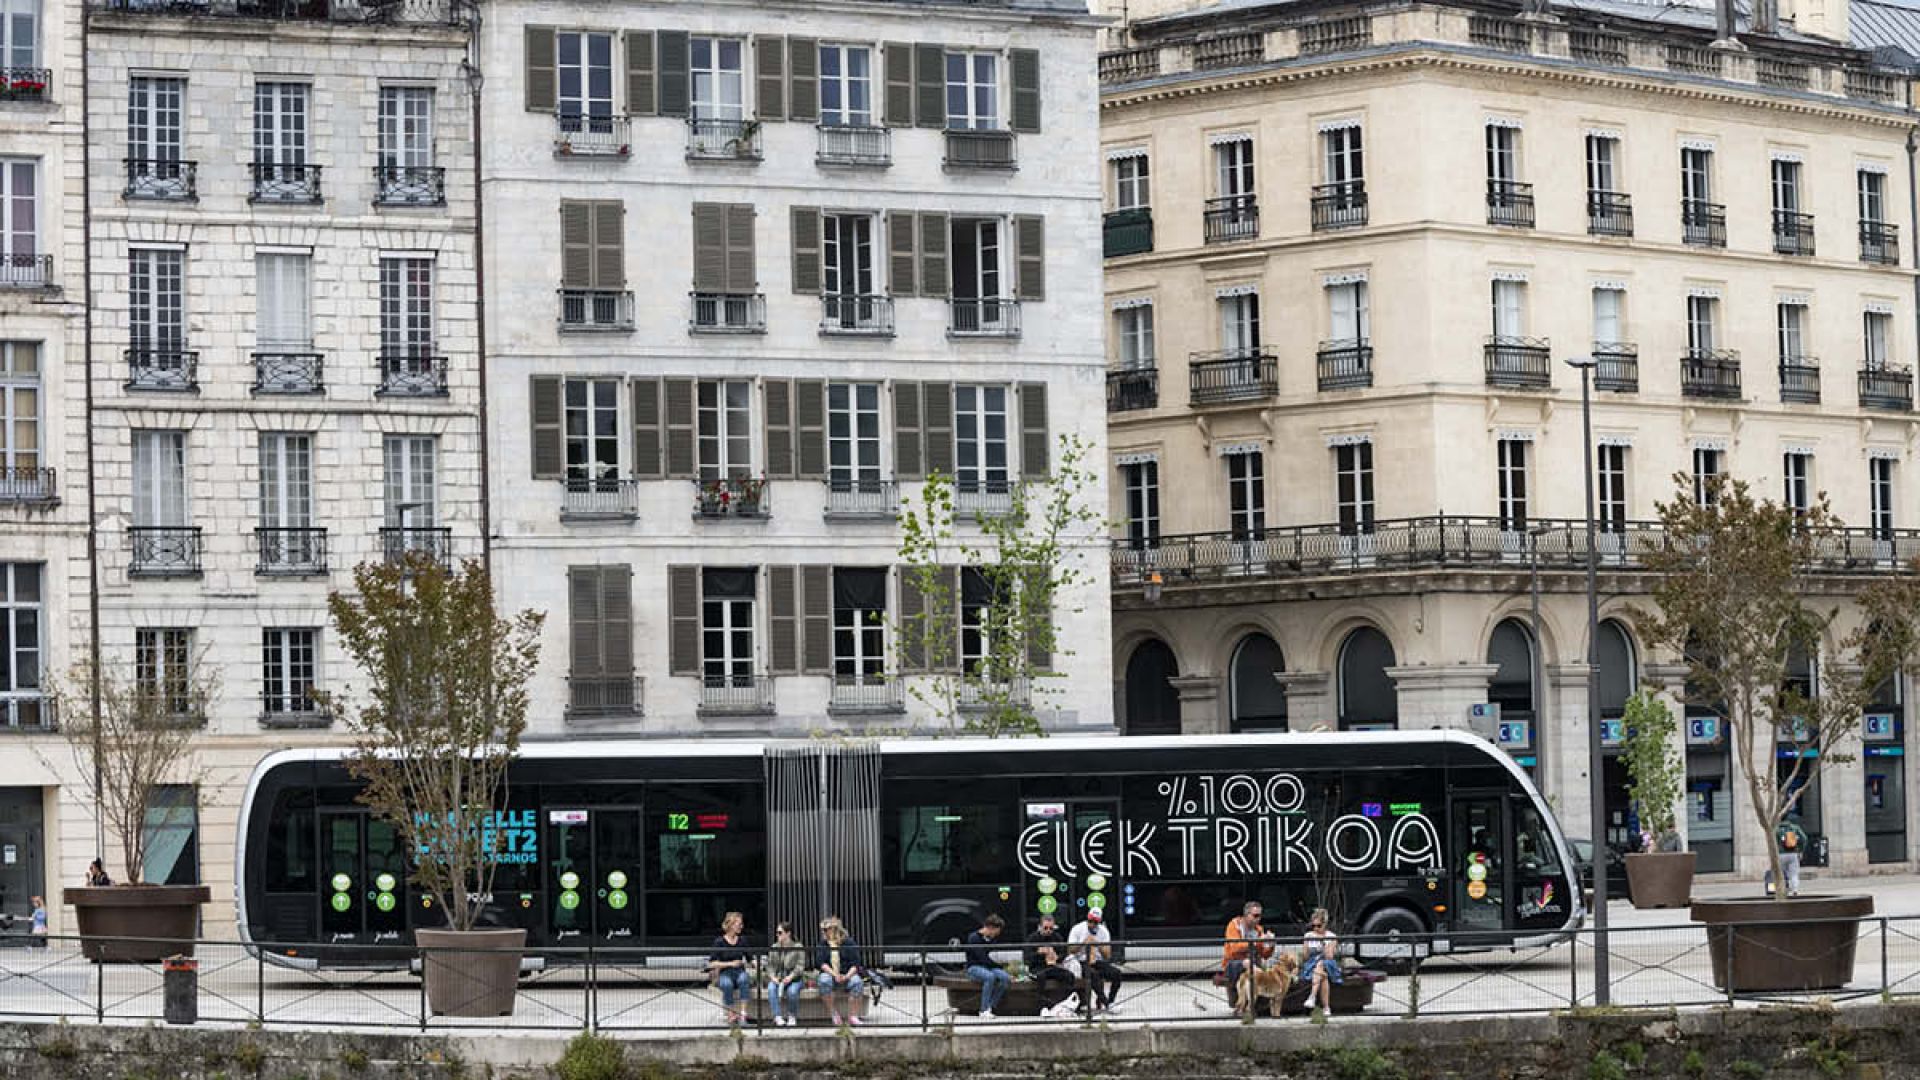 La Comunidad de Aglomeración del País Vasco vuelve a escoger los Tram’bus eléctricos de Irizar e-mobility